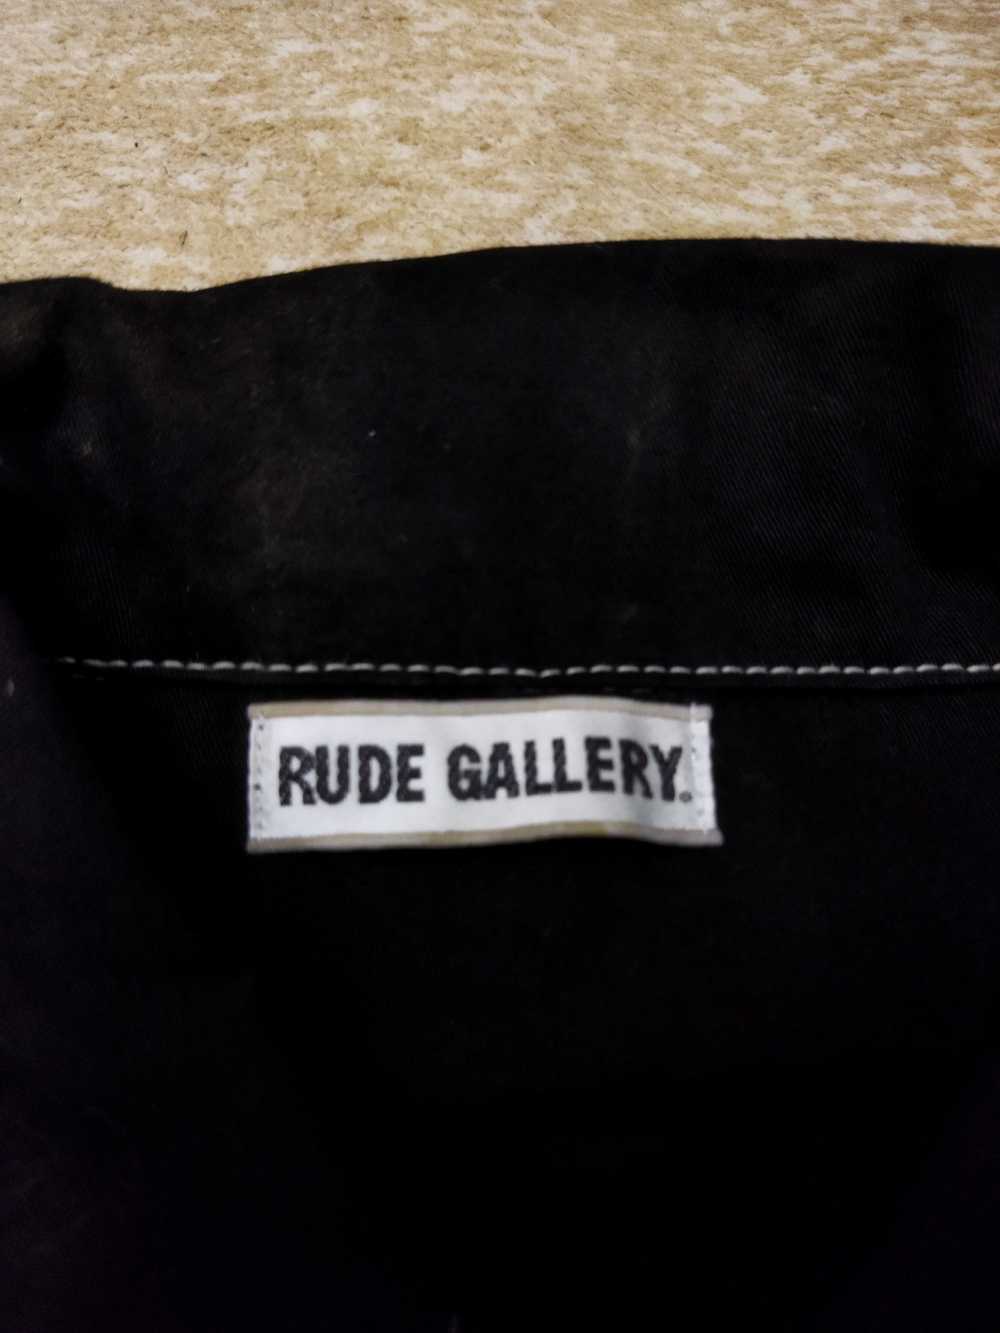 Rude Gallery Rude Gallery Jacket - image 5